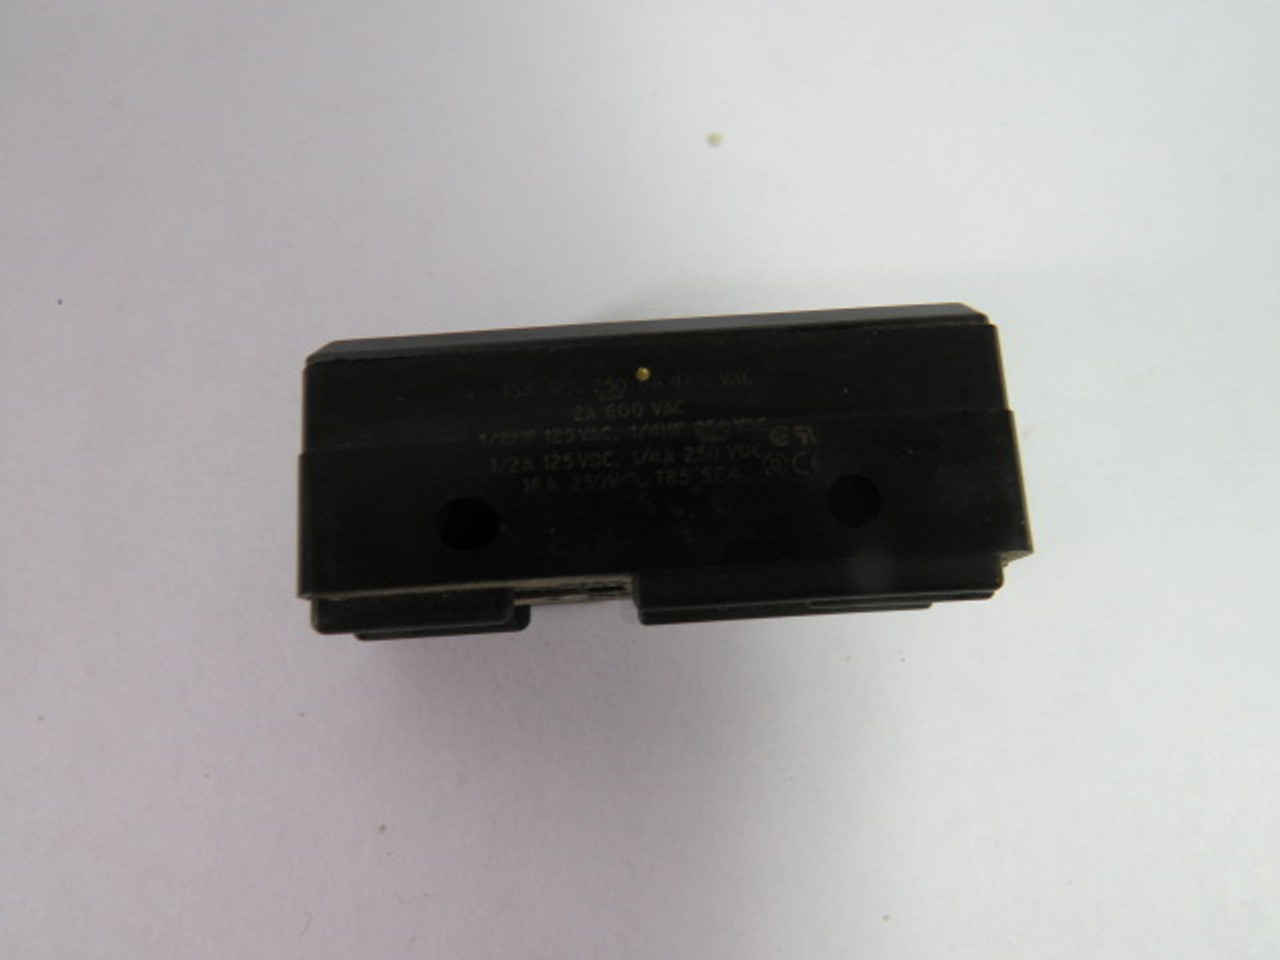 Microswitch BZ-2R Limit Switch 2A 600V USED